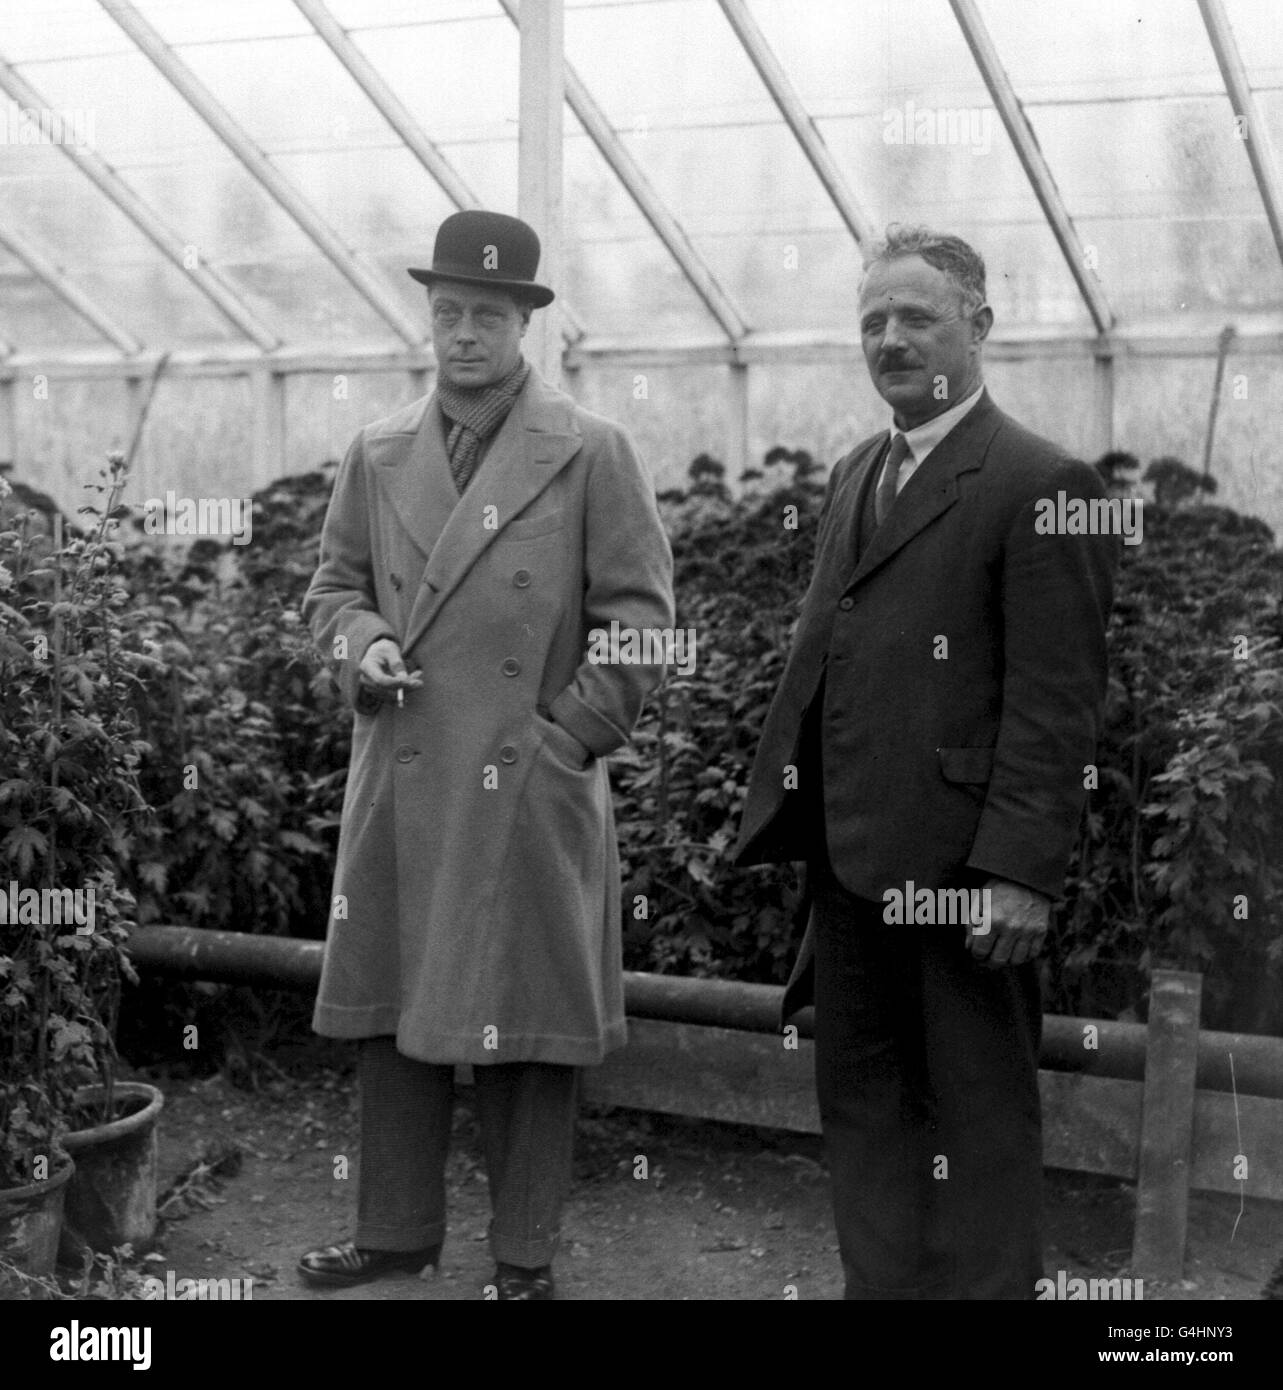 Il Principe di Galles (in seguito Edoardo VIII e Duca di Windsor) visita il vivaio di Walter Burden, che si vede spiegare le piante ecc al Principe. Foto Stock